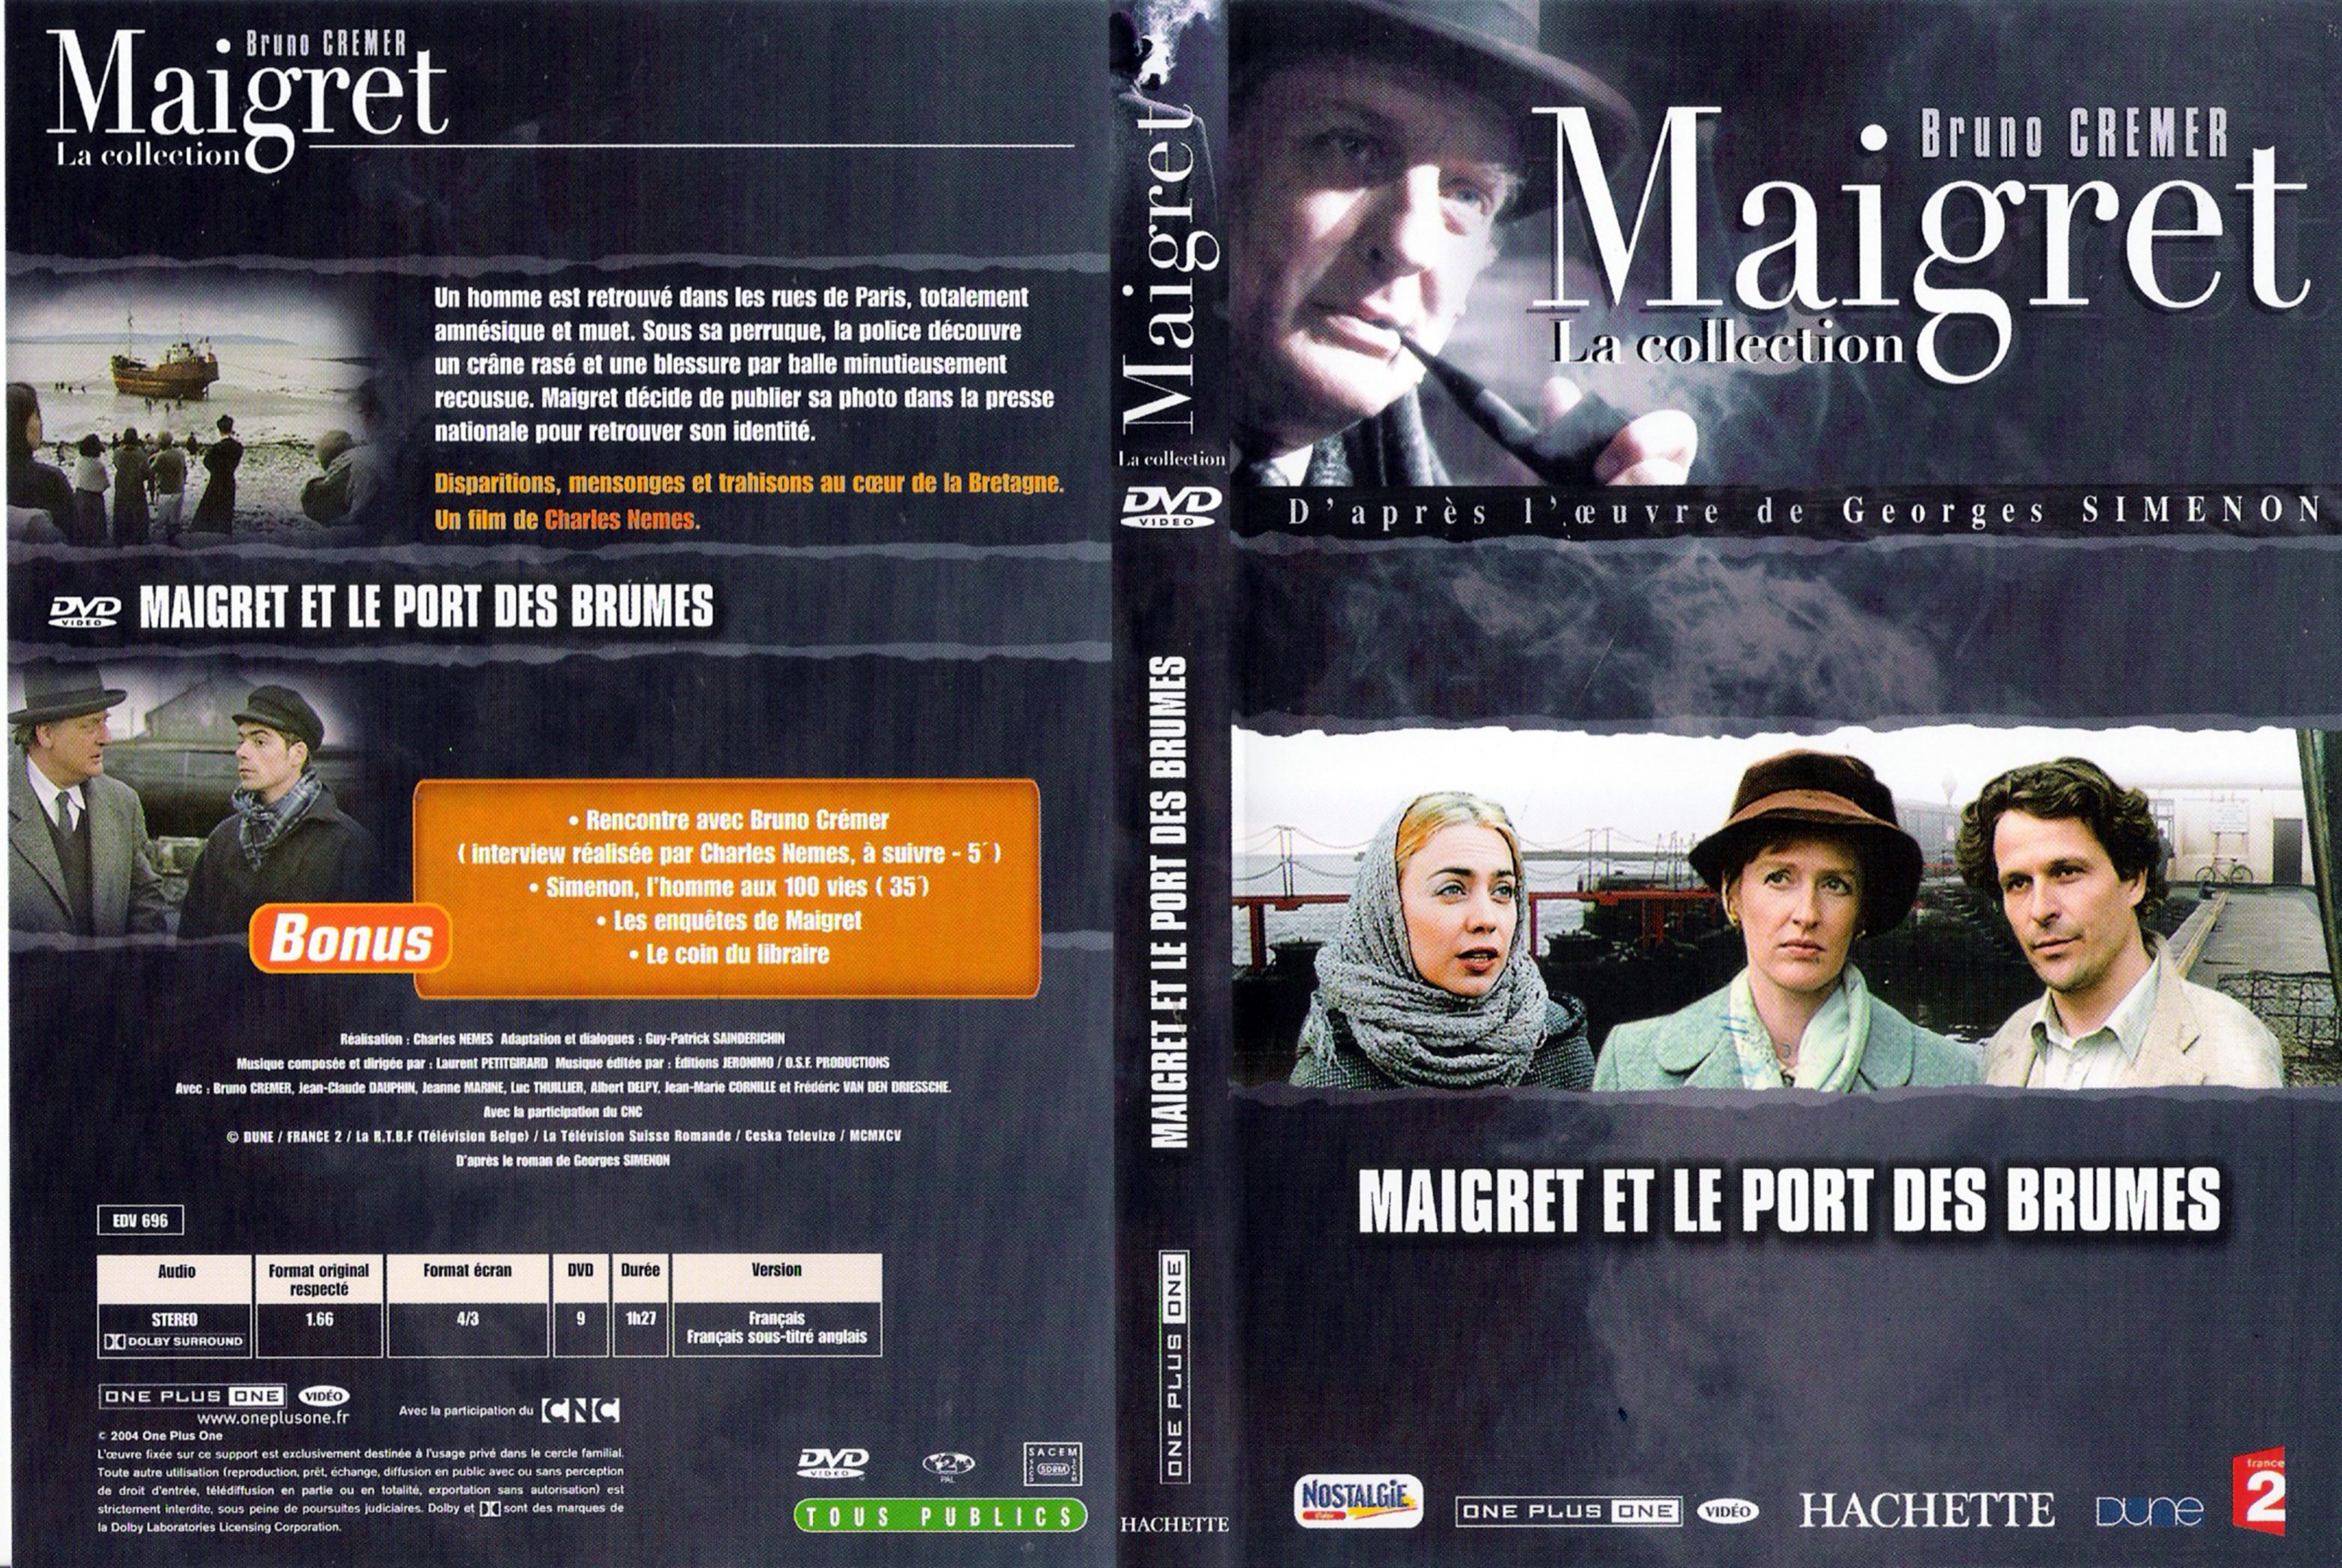 Jaquette DVD Maigret et le port des brumes (Bruno Cremer)